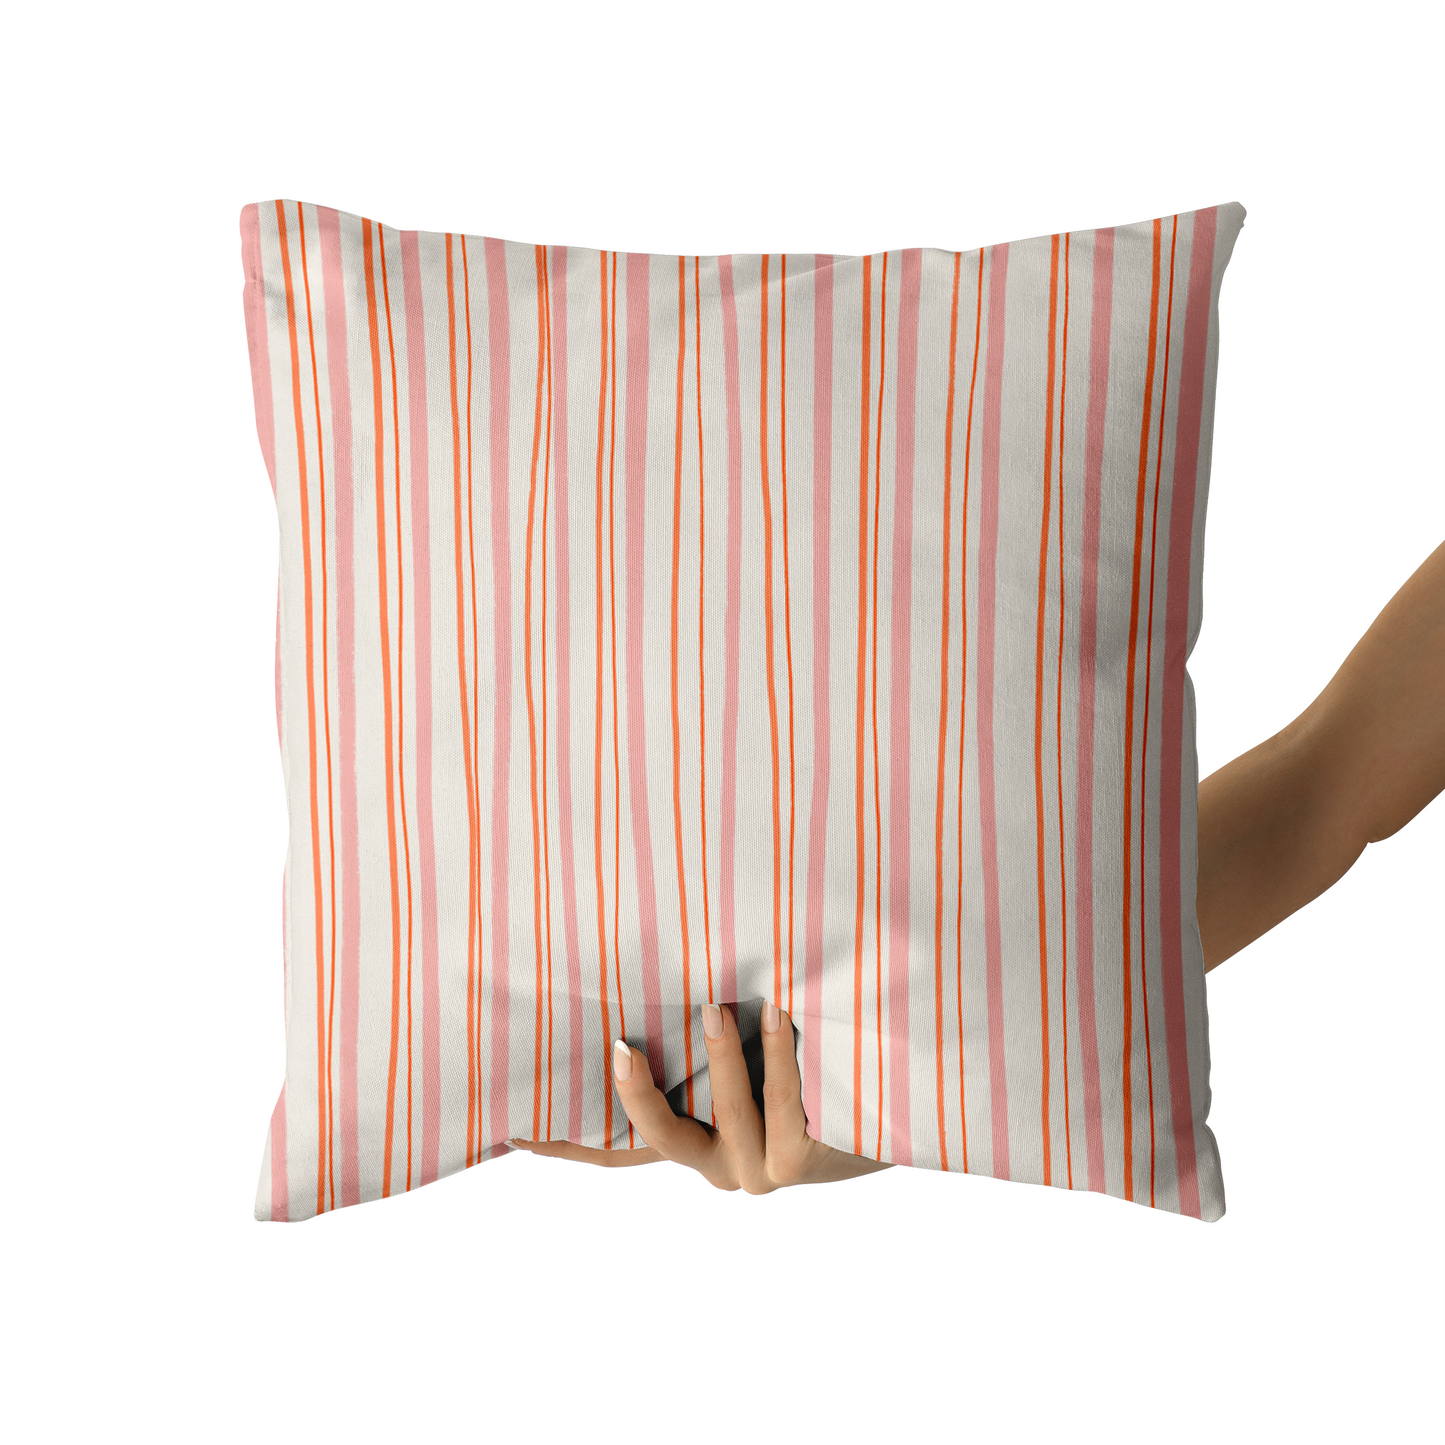 Retro Striped Pattern Throw Pillow